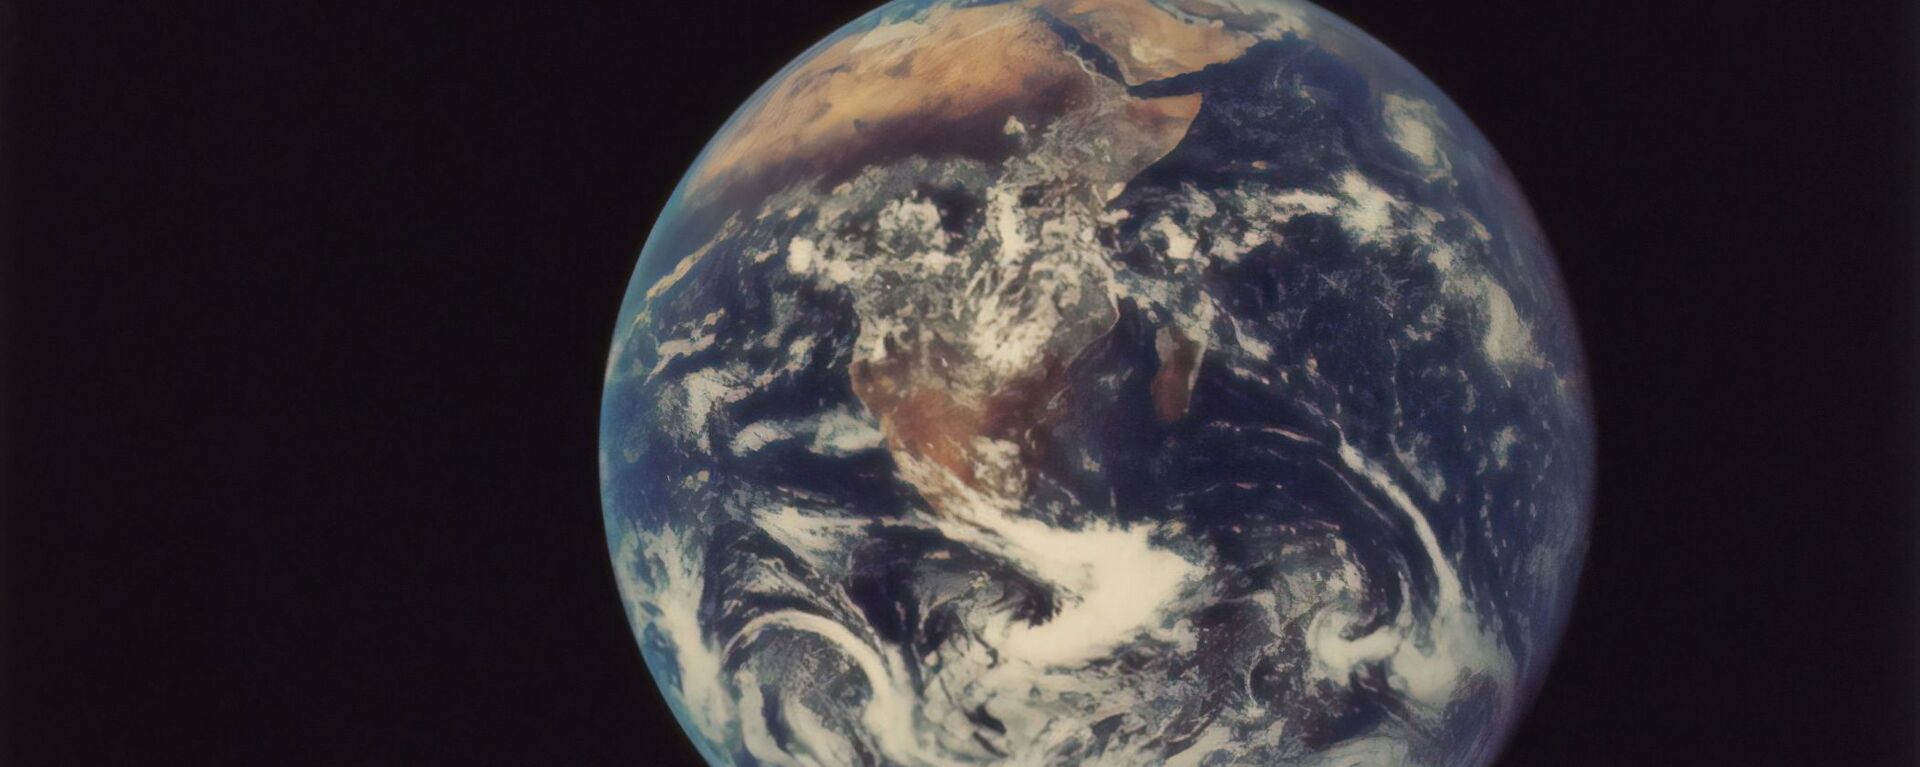 El planeta Tierra - Sputnik Mundo, 1920, 15.04.2021